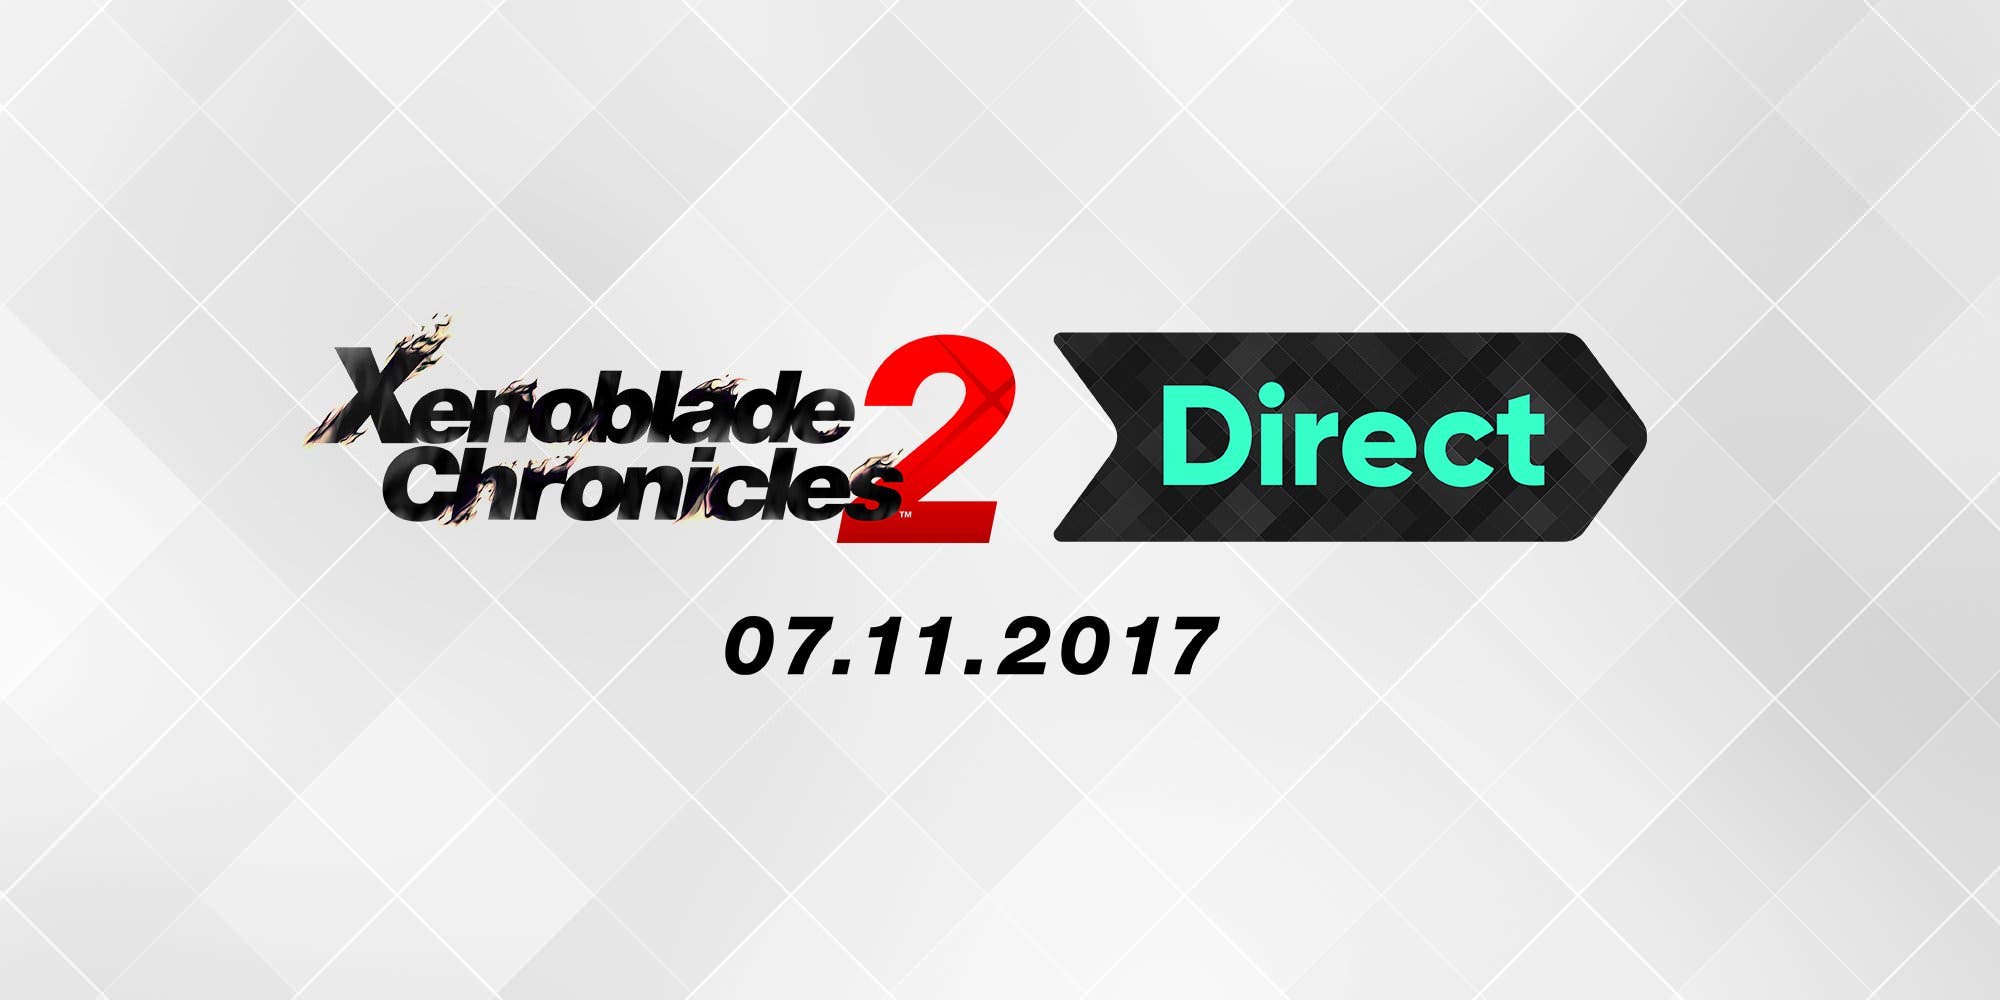 Ya disponible la presentación completa del Xenoblade Chronicles 2 Direct